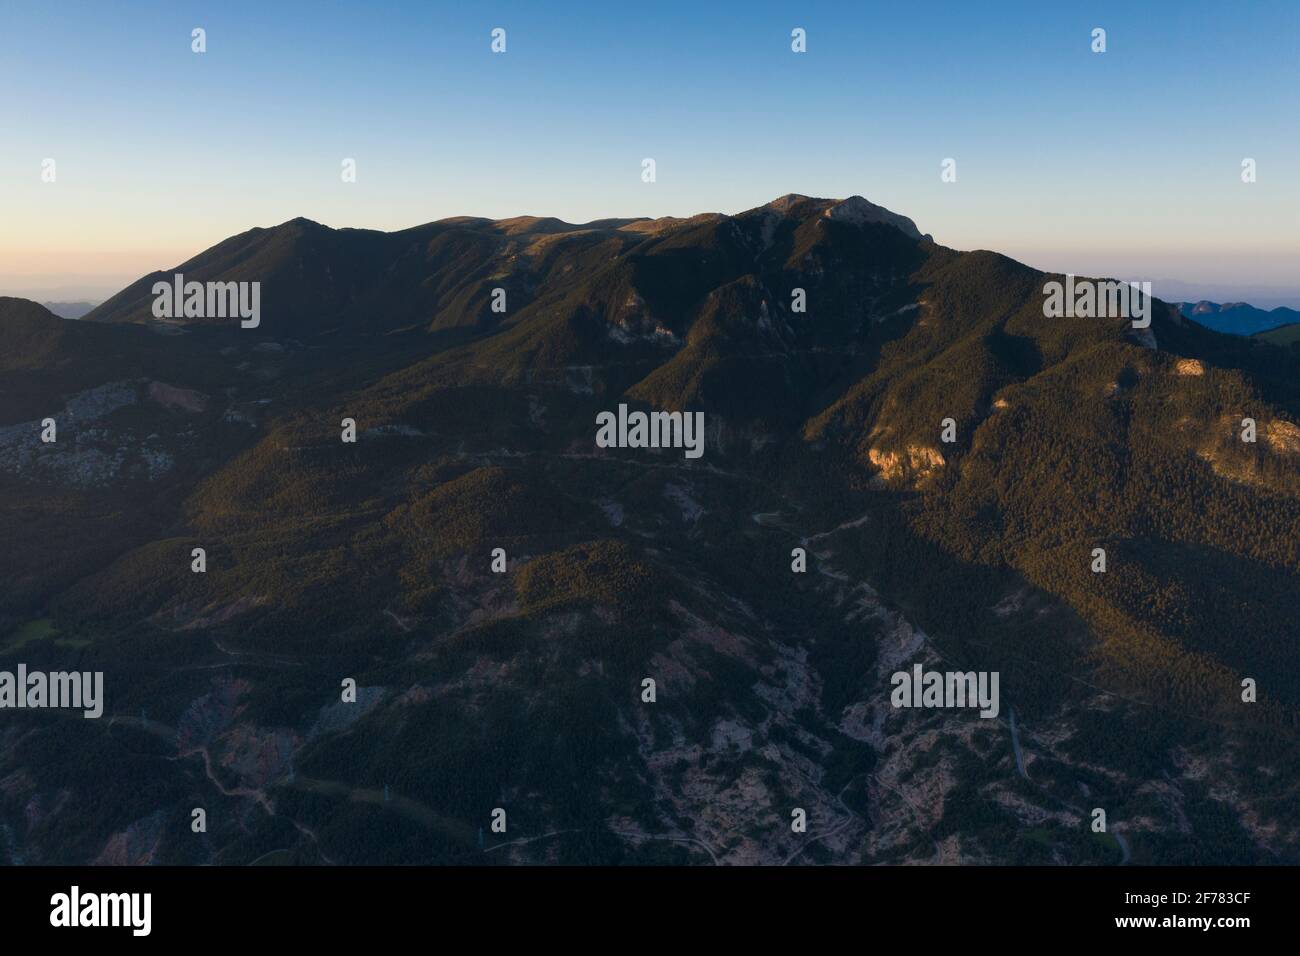 Vista aerea della Serra d'Ensija in un'alba estiva (provincia di Barcellona, Catalogna, Spagna, Pirenei) ESP: Vista aérea de la Serra d'Ensija al amanecer Foto Stock